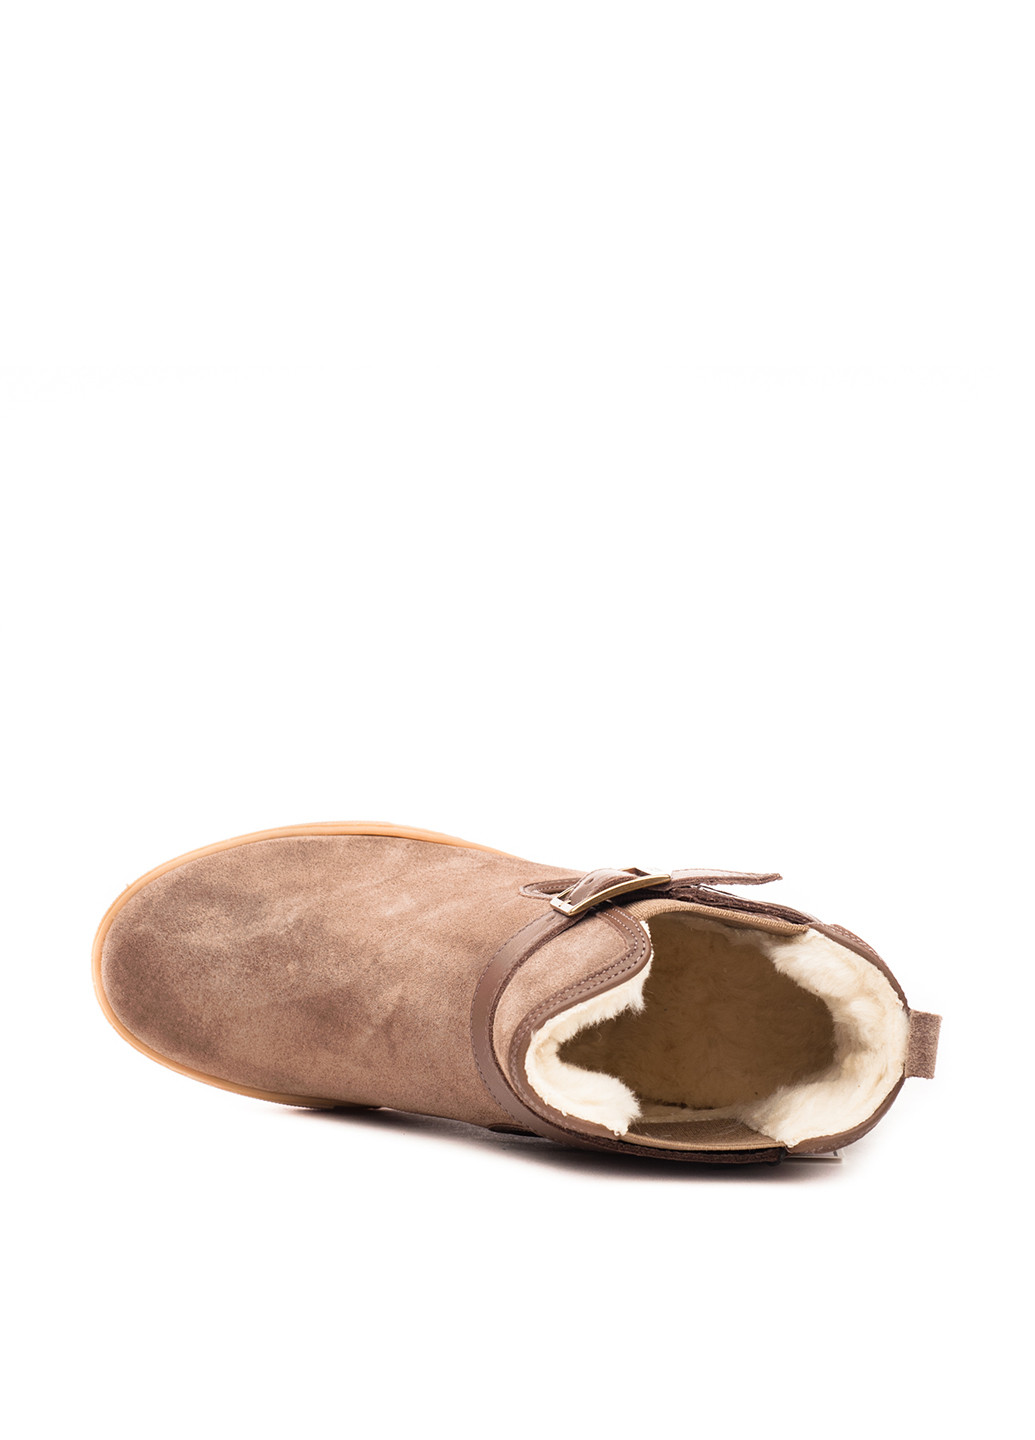 Зимние ботинки челси Aigle без декора из натуральной замши